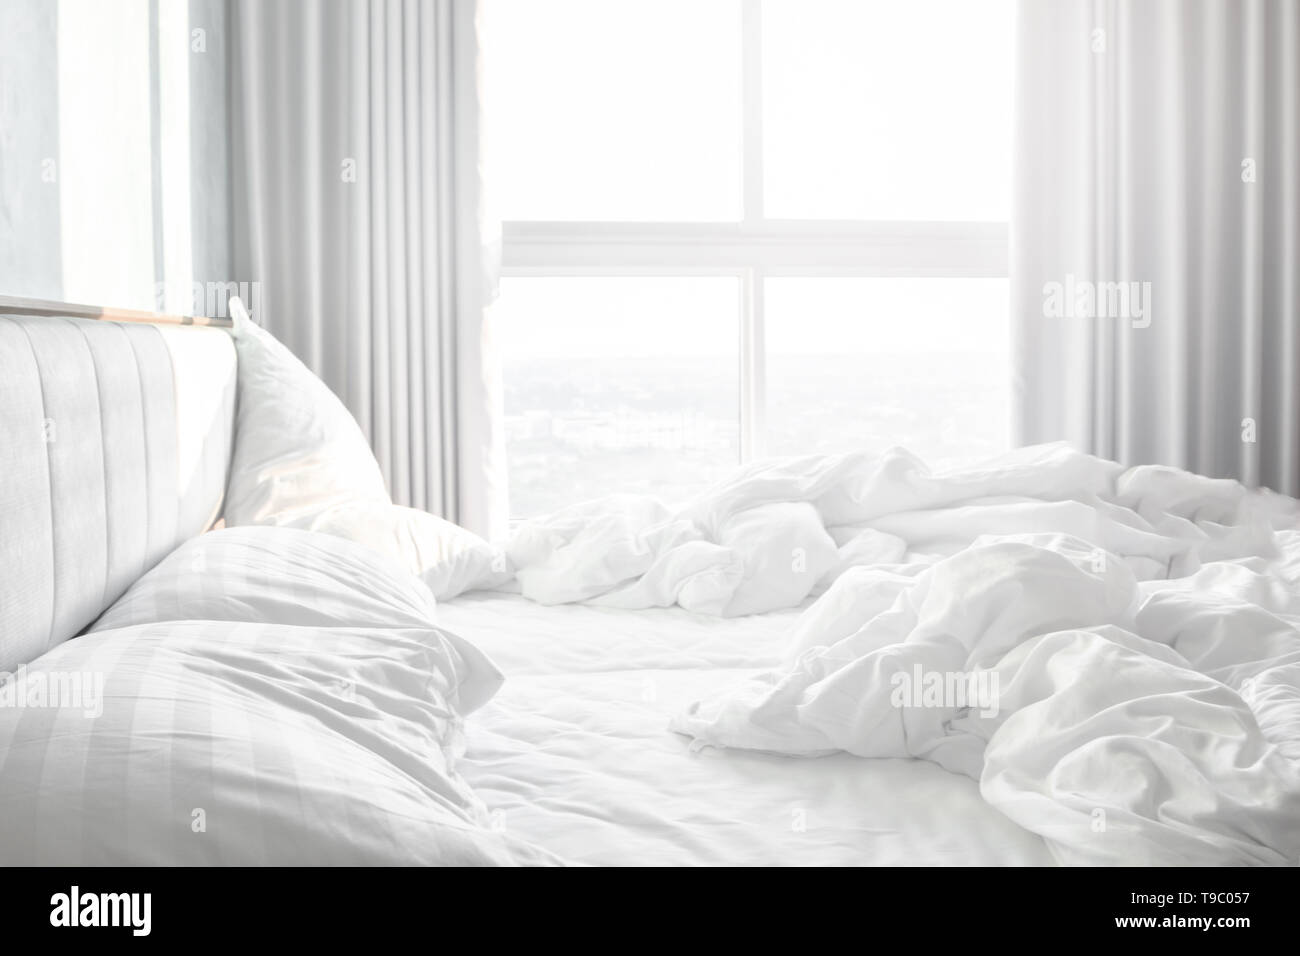 Confortevole camera da letto,confuso lenzuola e piumone con grinza disordinati in camera da letto Foto Stock